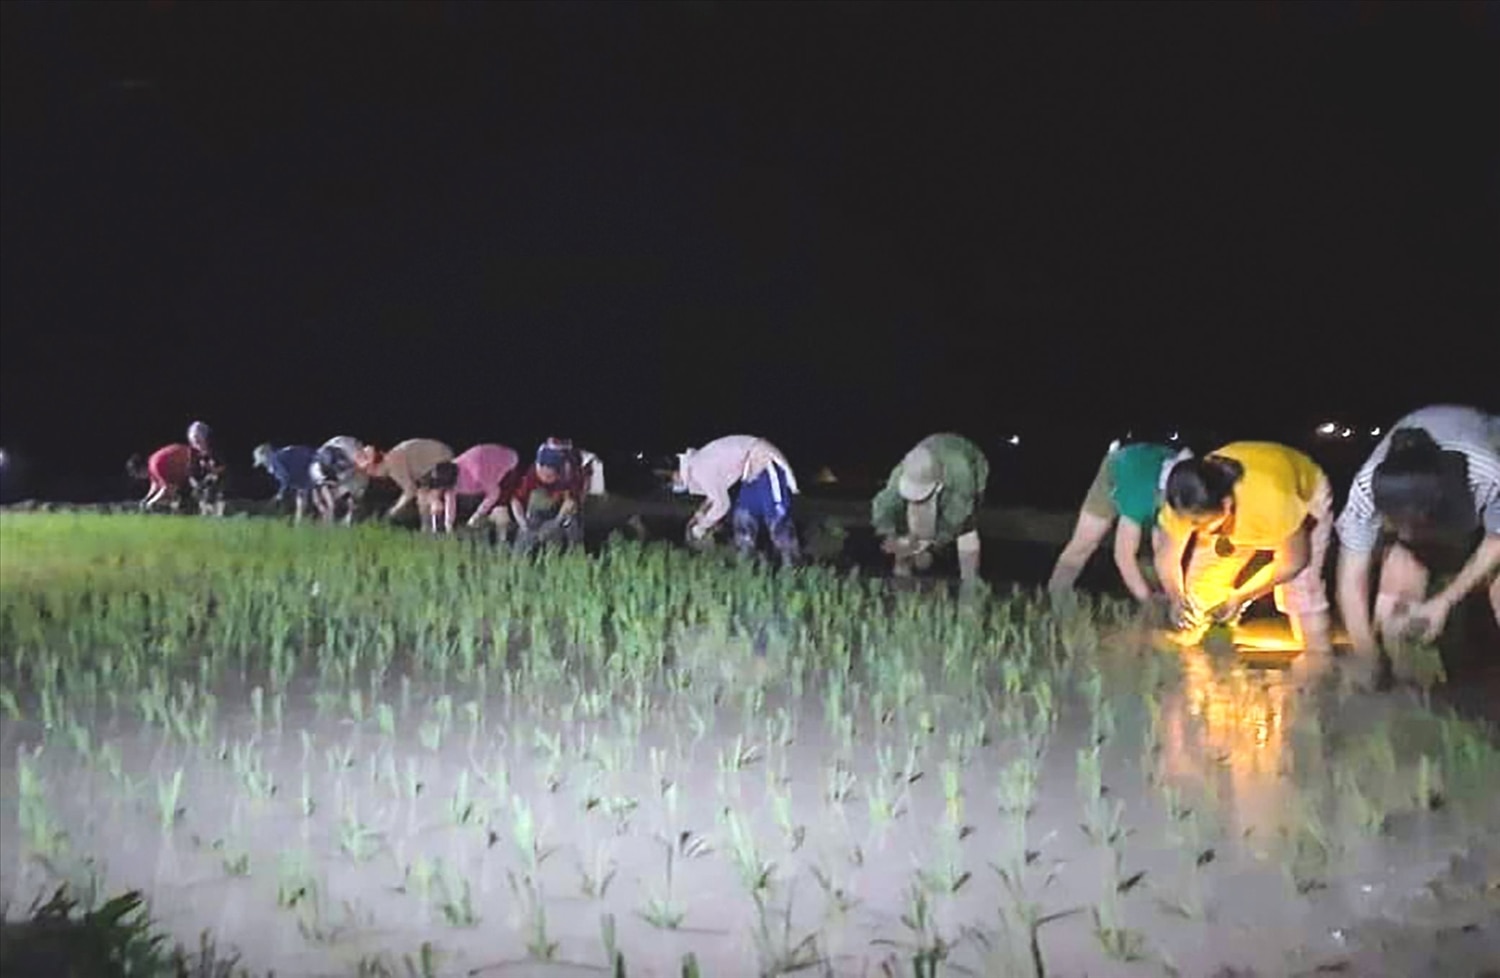 Khung cảnh ban đêm trên cánh đồng của người nông dân vùng cao Nghệ An.